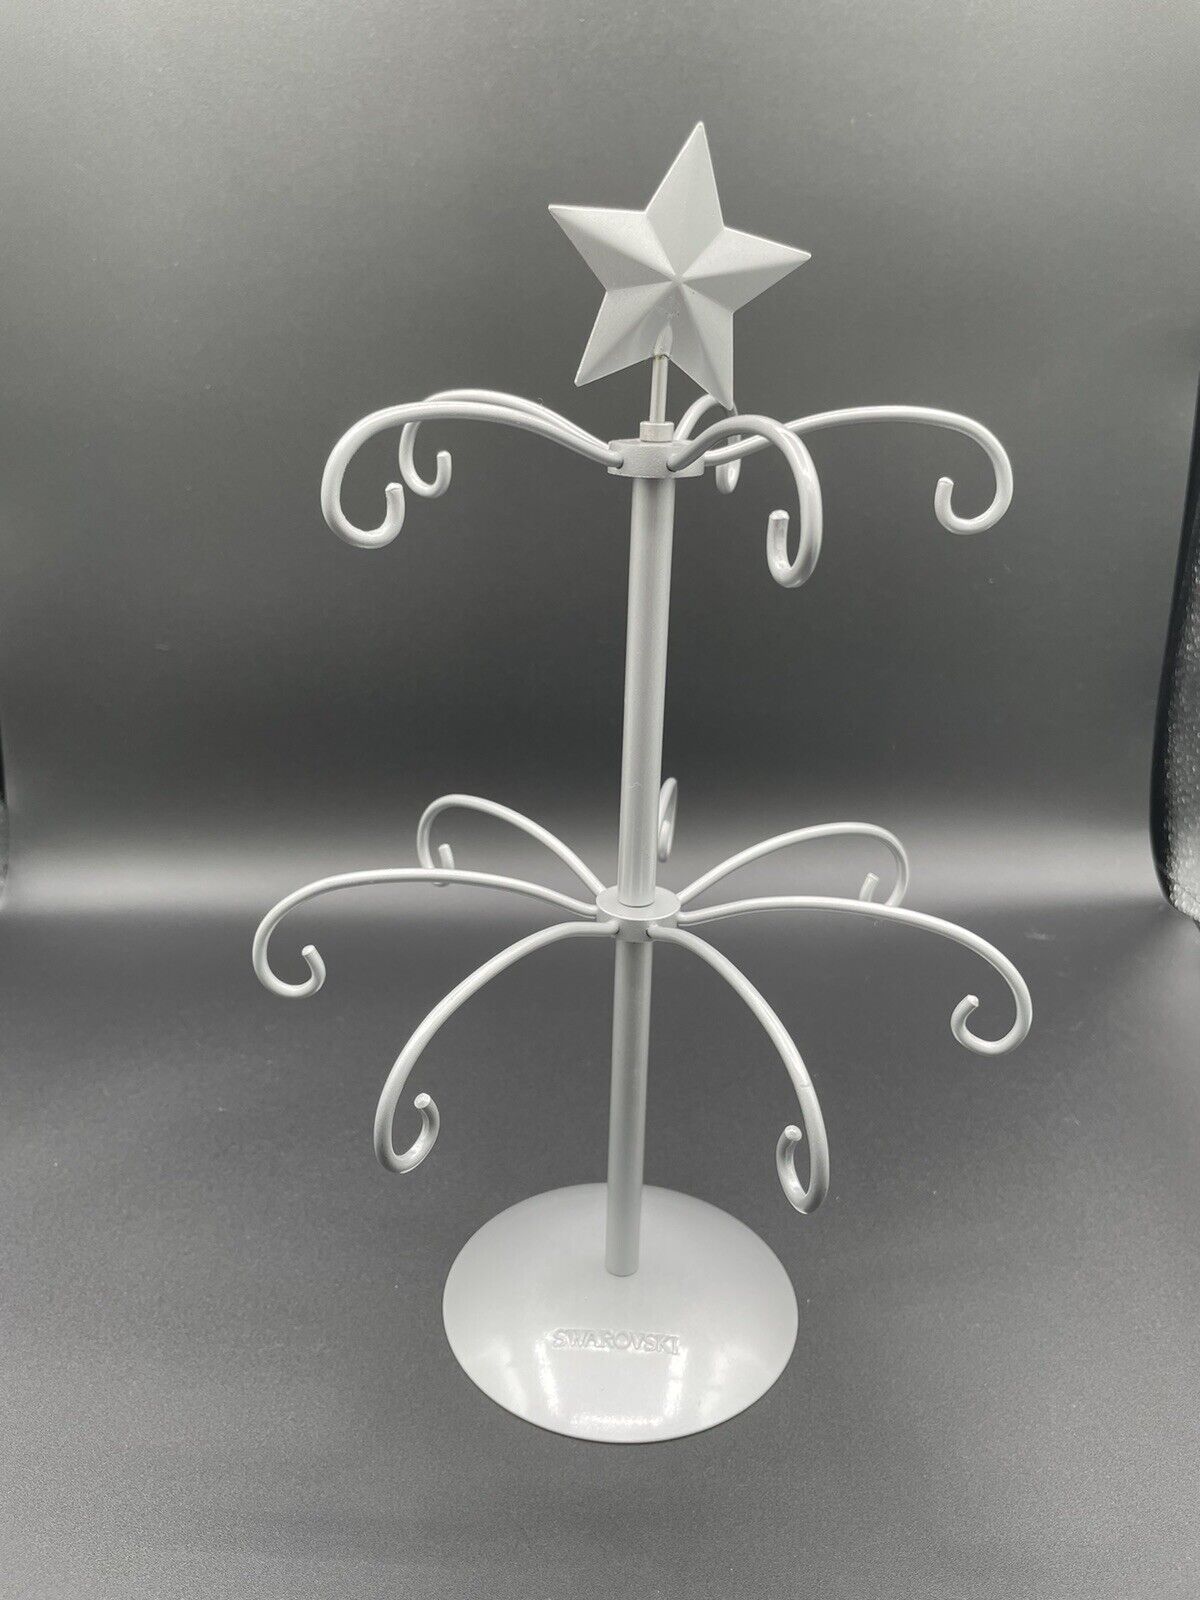 Rare Swarovski Crystal 12” Christmas Holiday Display Stand For 12 Ornaments